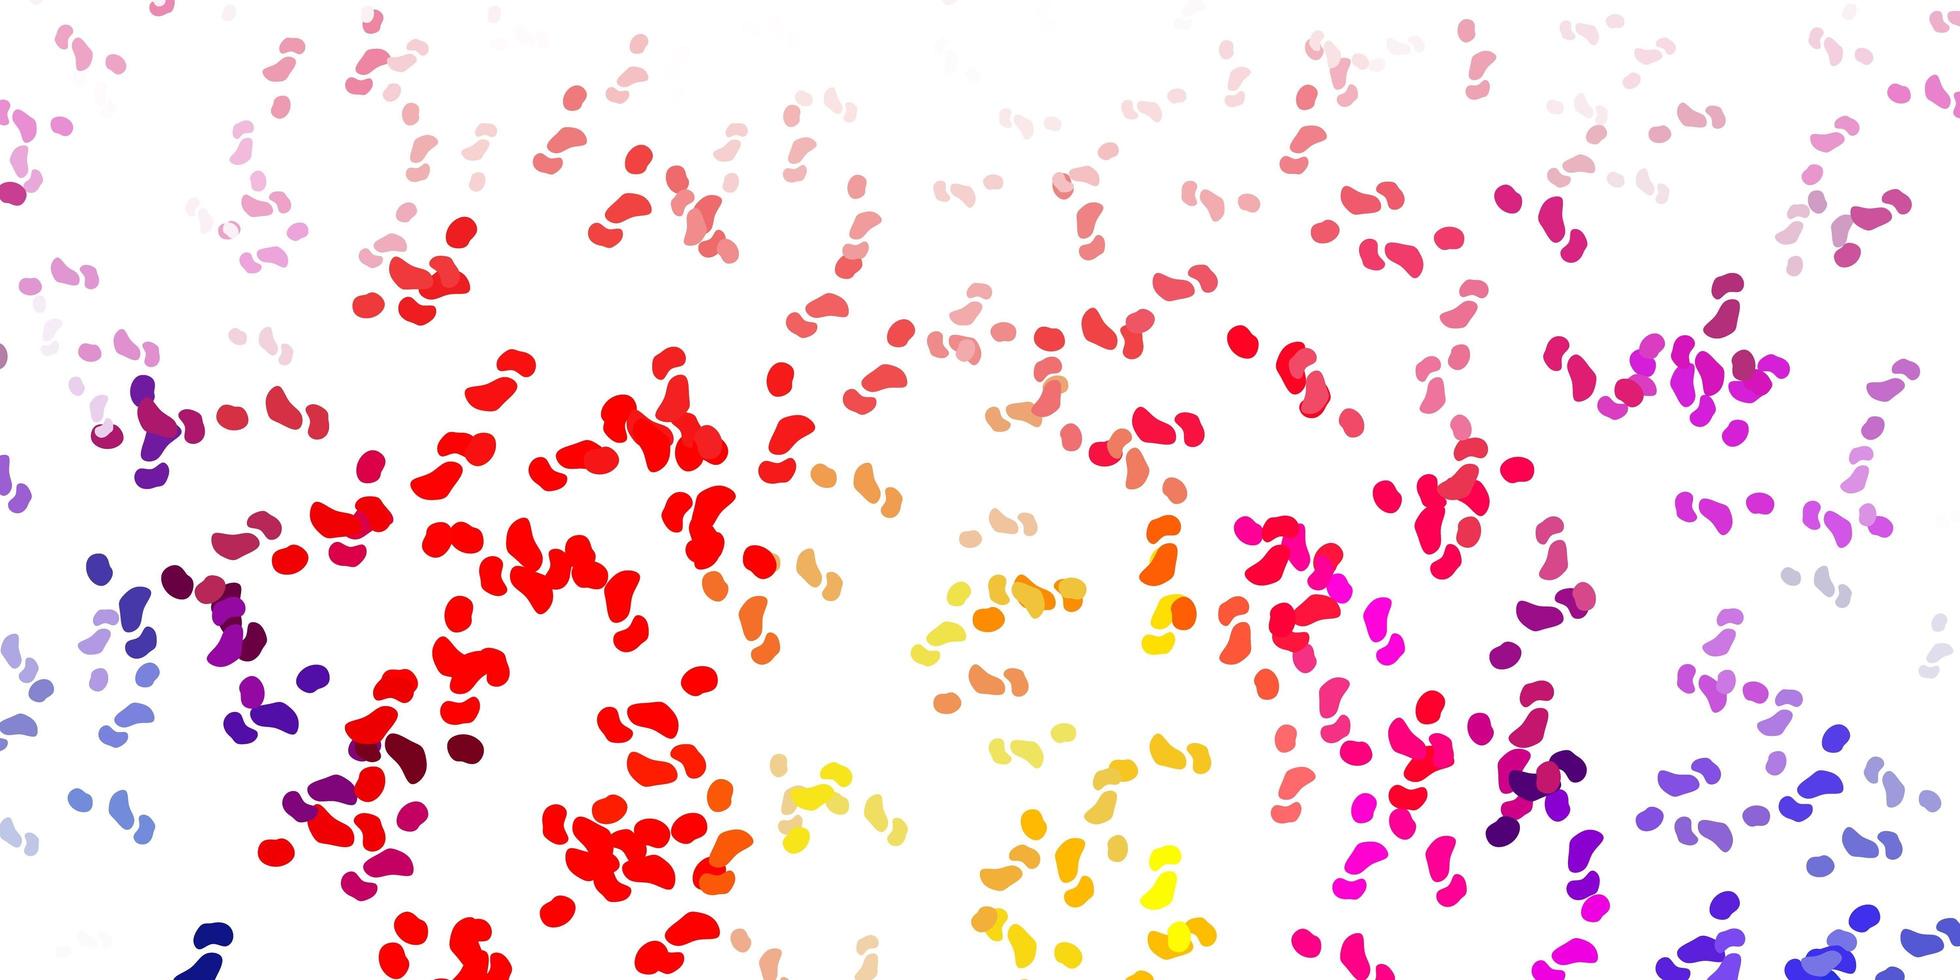 modèle vectoriel rouge et jaune clair avec des formes abstraites.